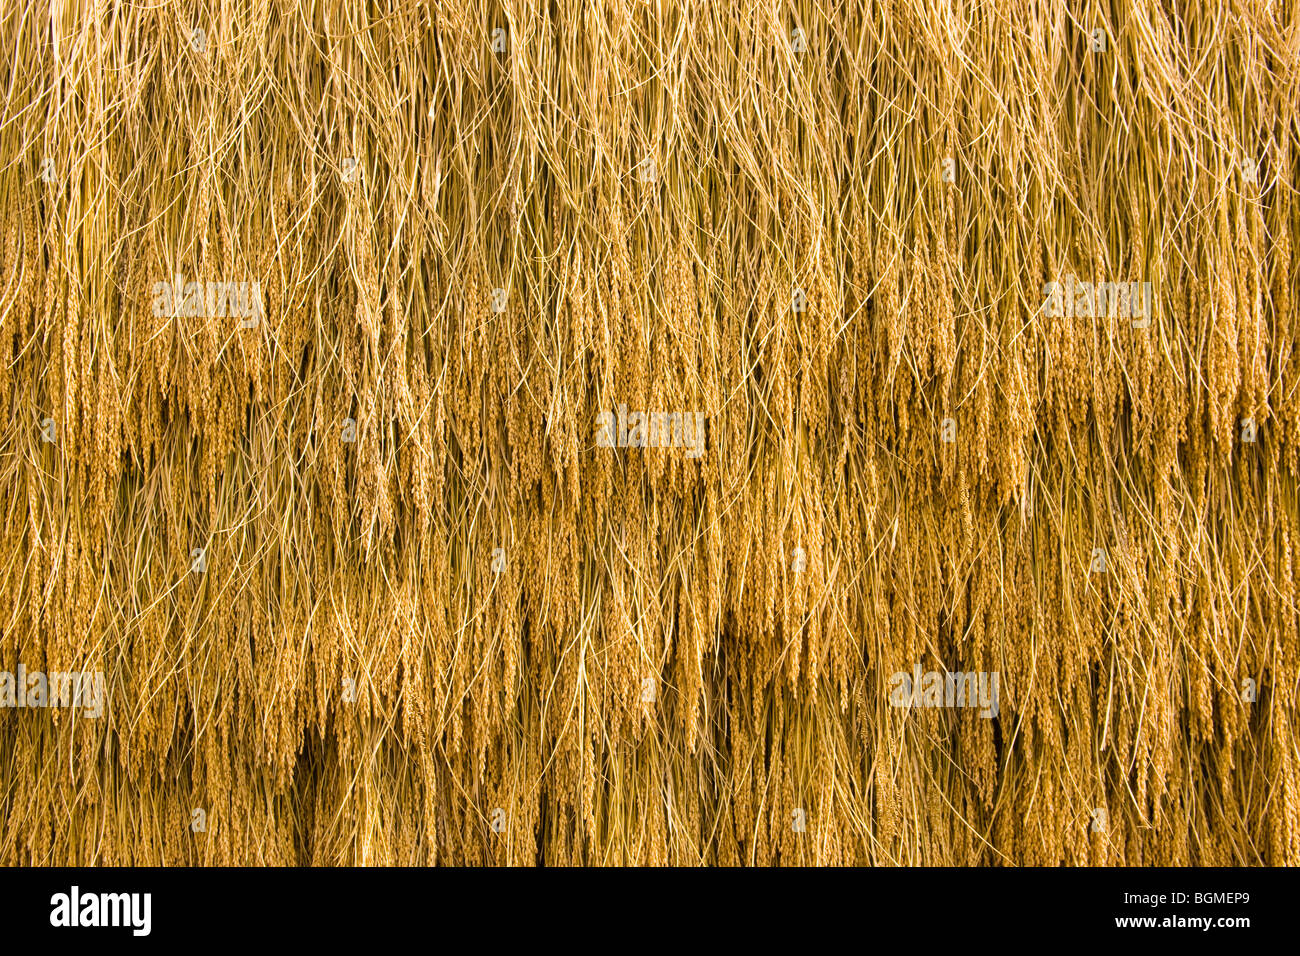 Ohren von Reis aufgehängt zum trocknen Stockfoto